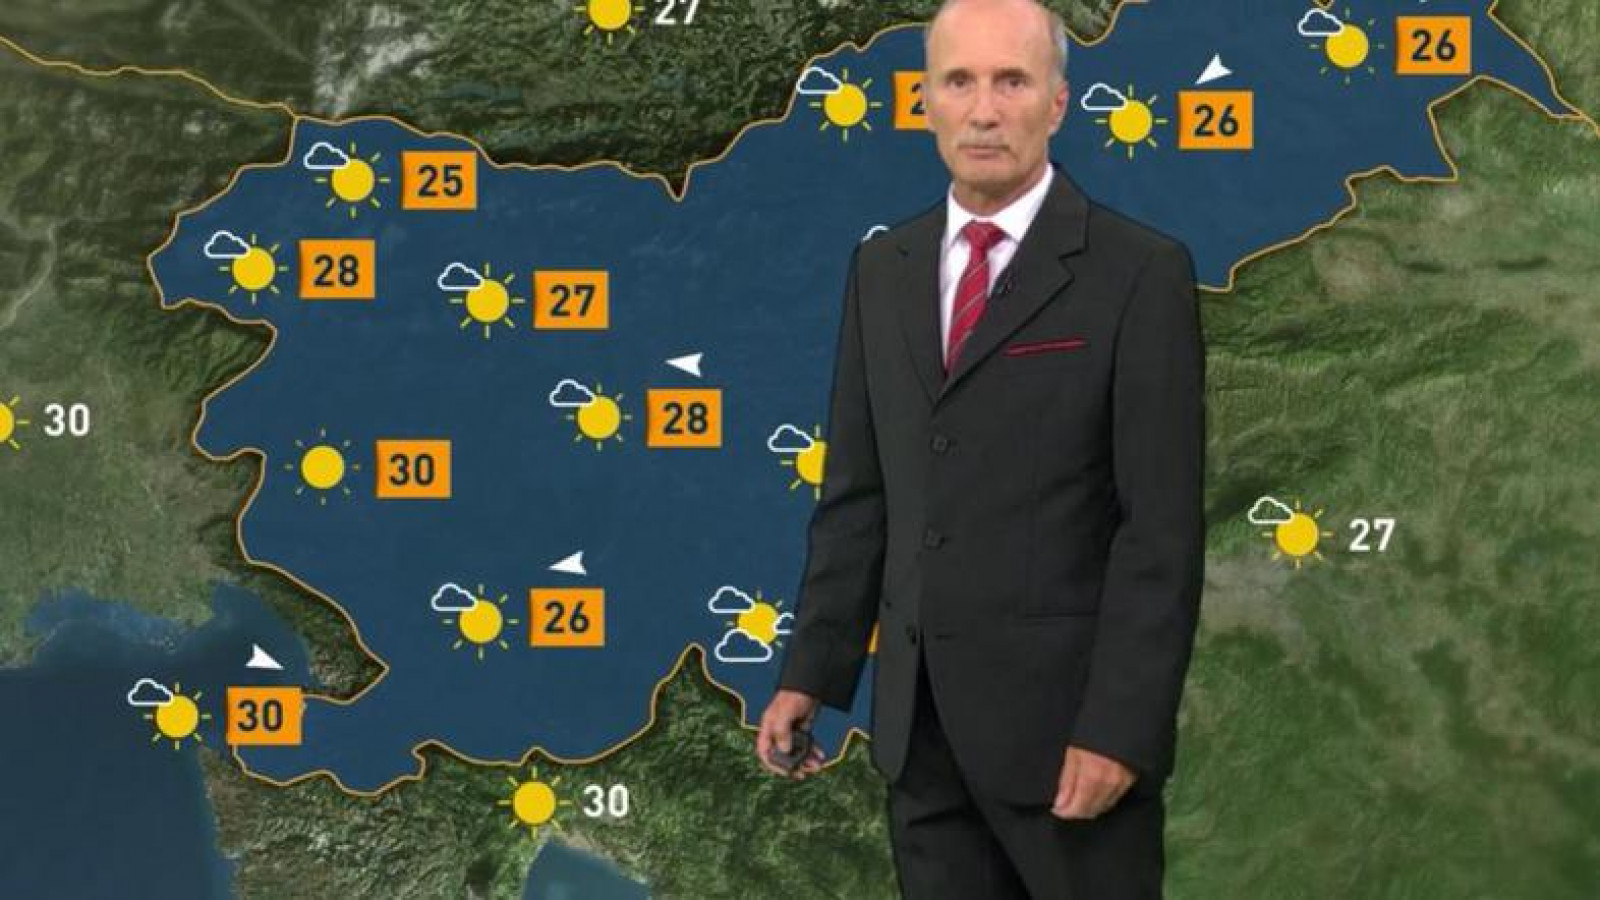 Janez Markošek je napovedoval vreme tudi na TV Slovenija